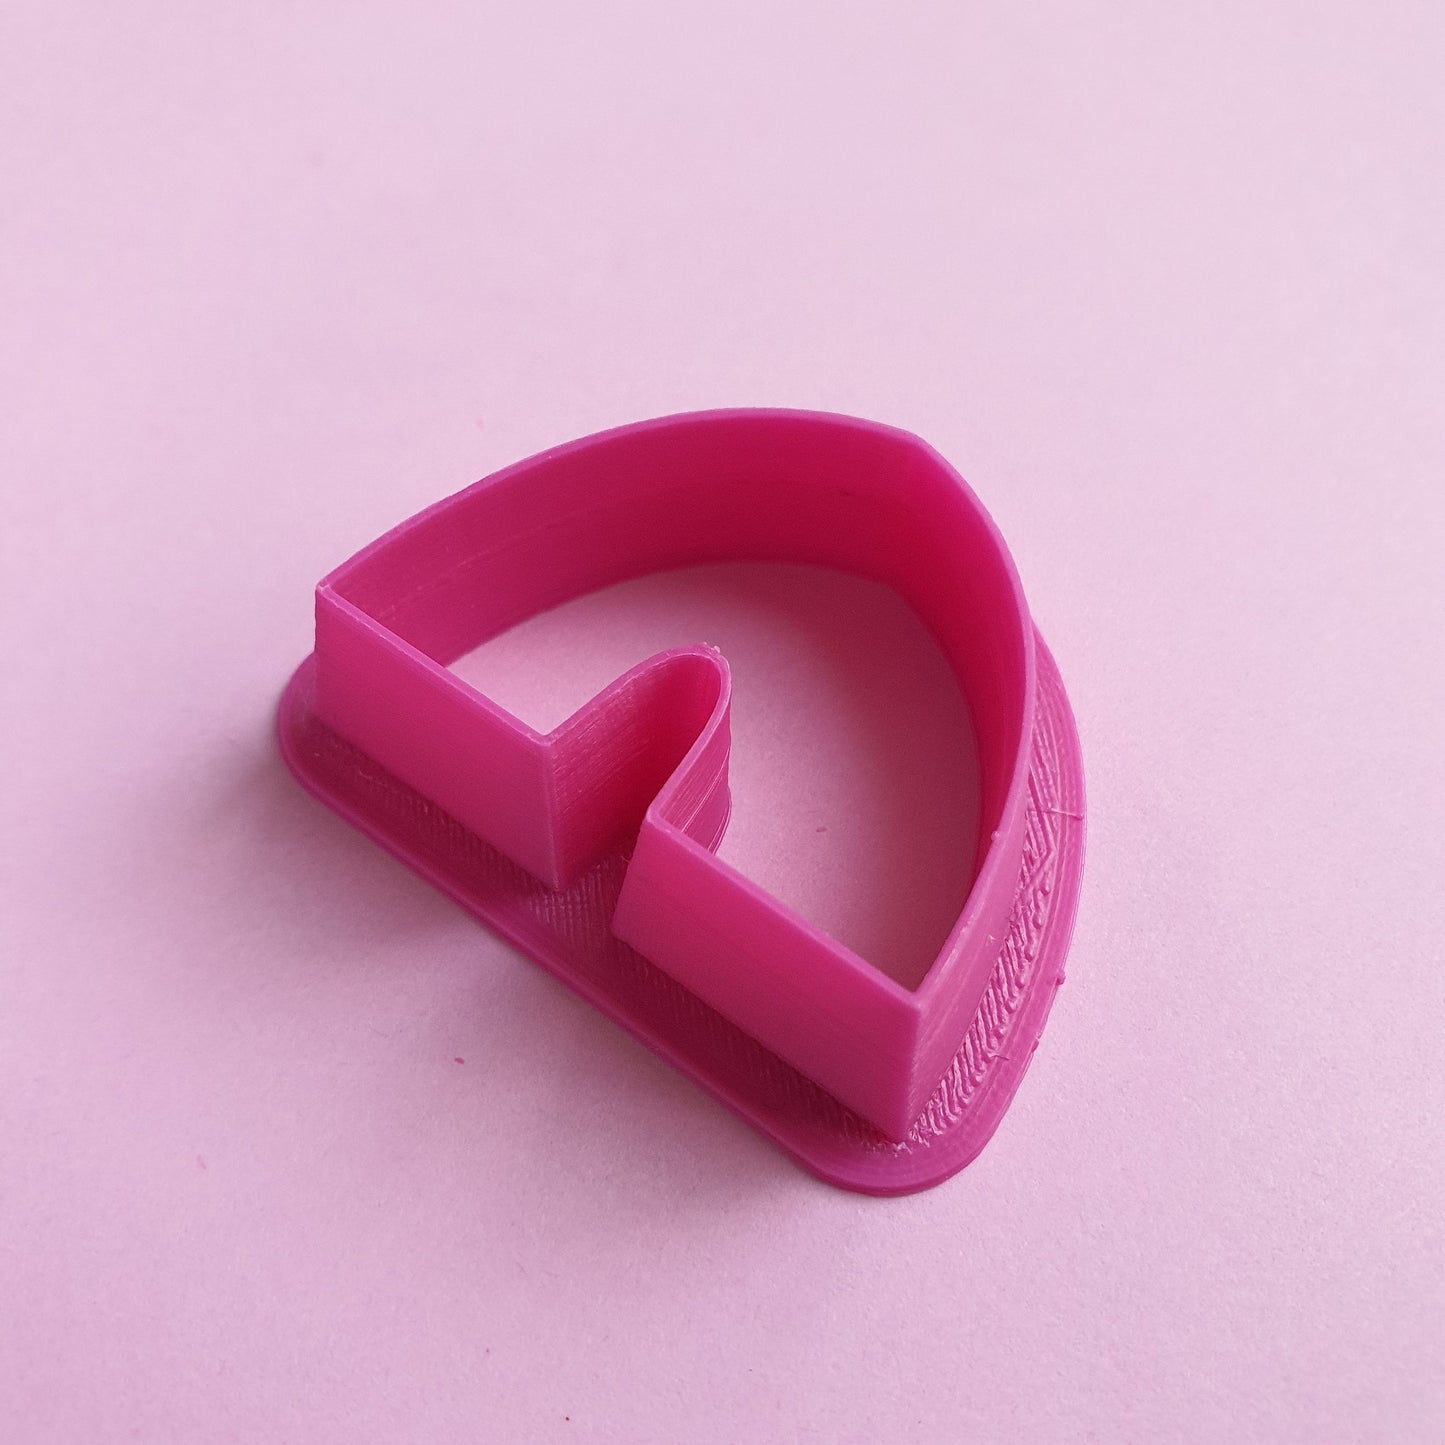 Earrings Polymer clay 3D cutters "Arch" Geometry Jewelry shape cutter